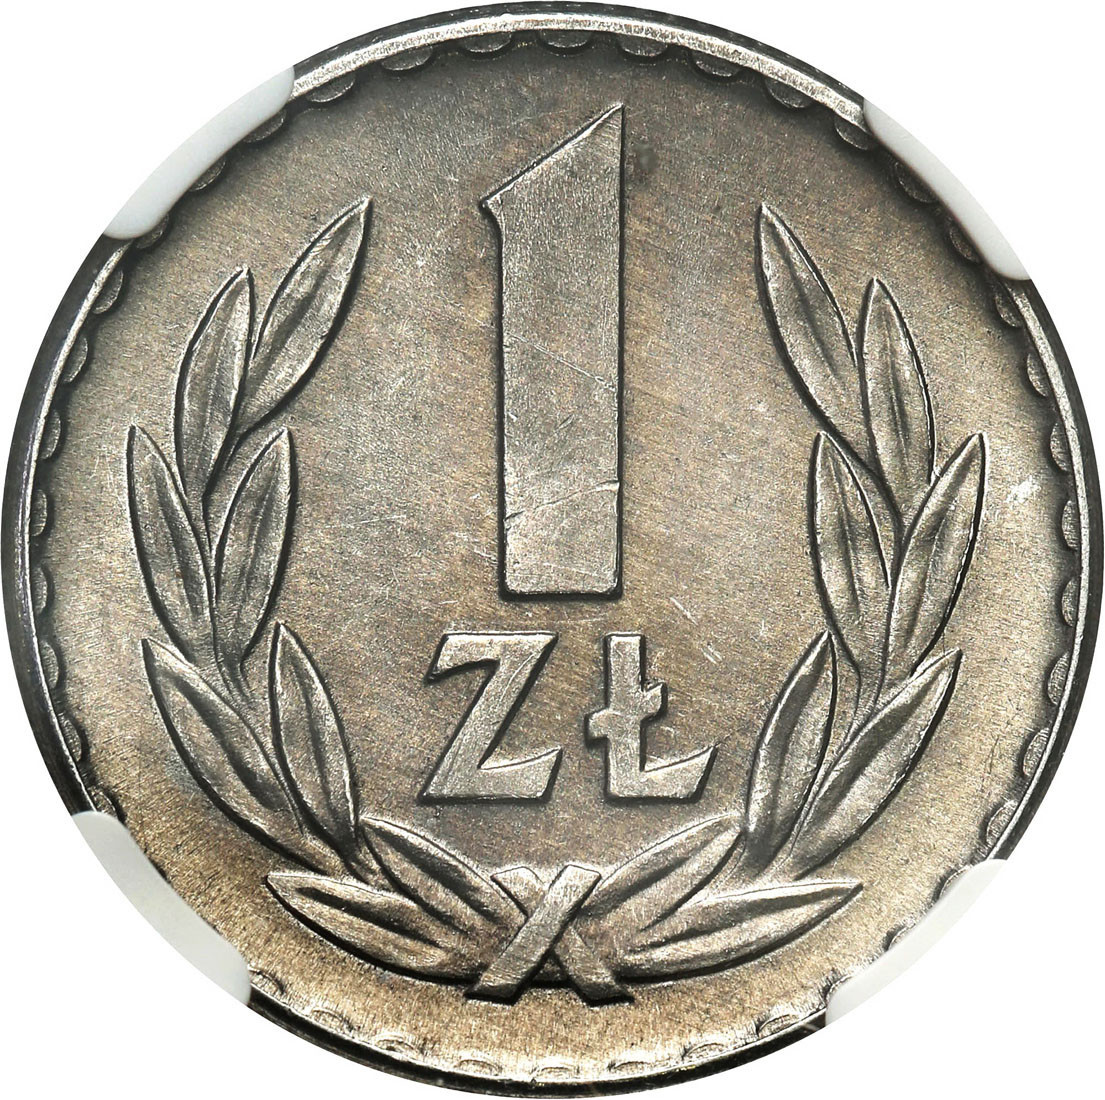 PRL. 1 złoty 1966 Aluminium NGC MS66 - RZADKIE